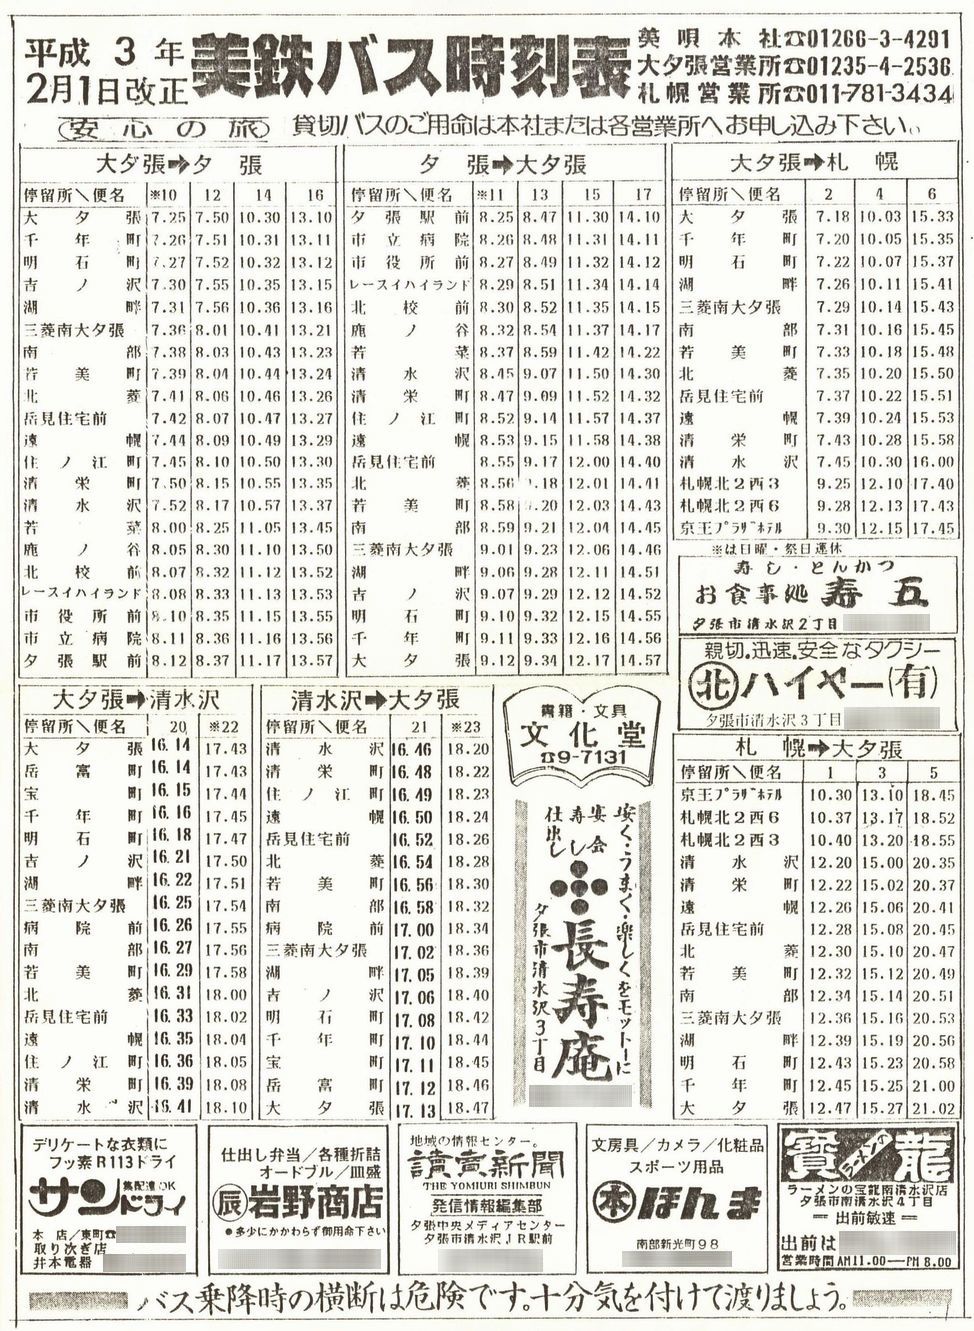 1991-02-01改正_美鉄バス_大夕張地区時刻表